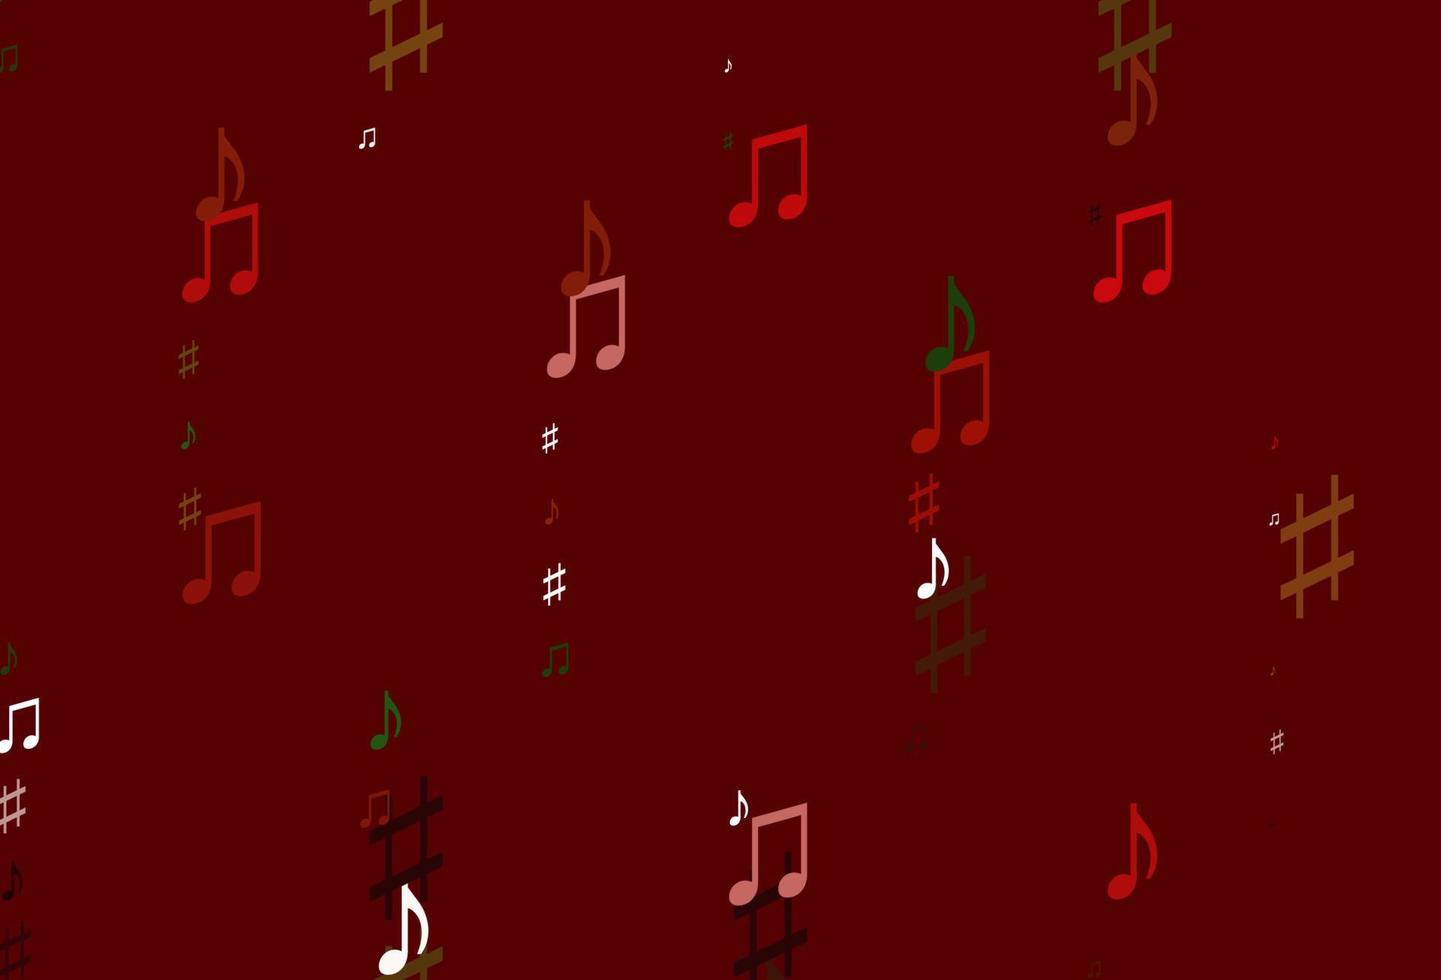 verde claro, textura vectorial roja con notas musicales. vector